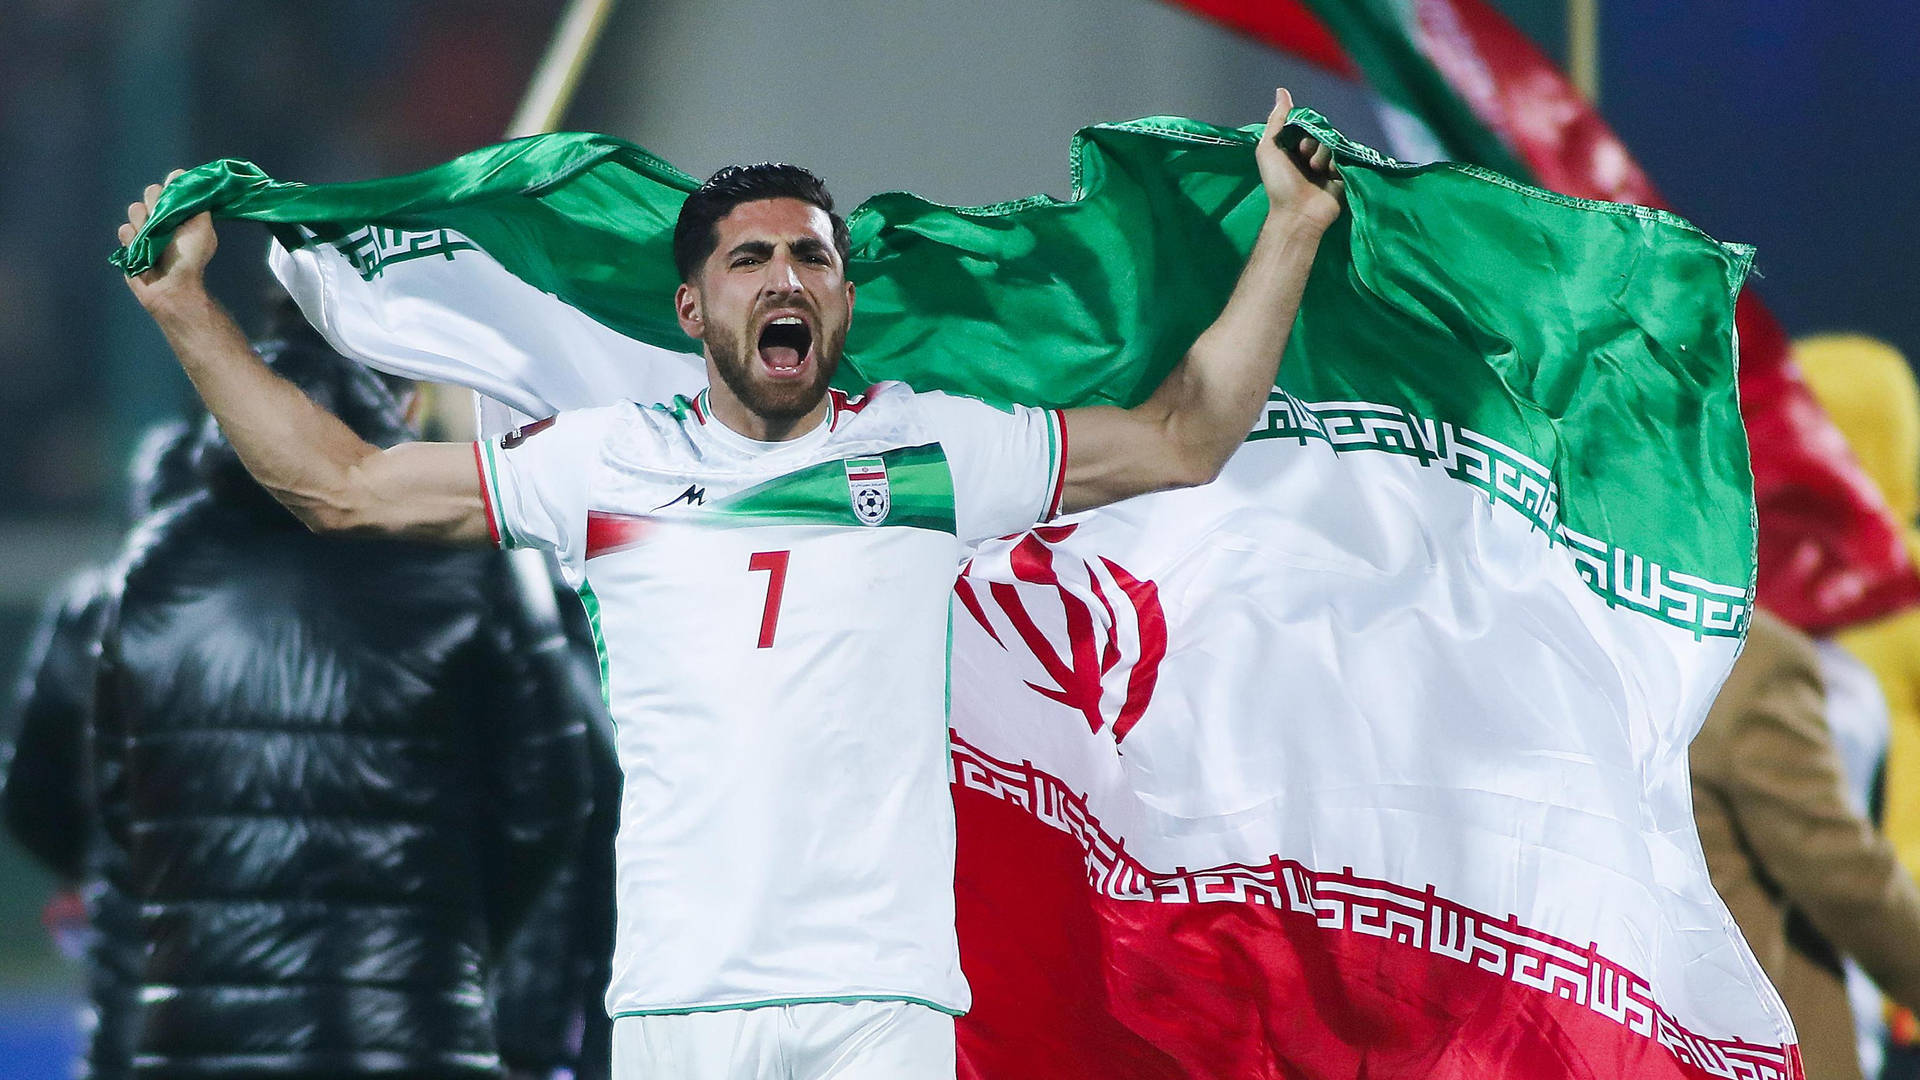 Equipenacional De Futebol Do Irã Camisa Nº 7 Alireza. Papel de Parede